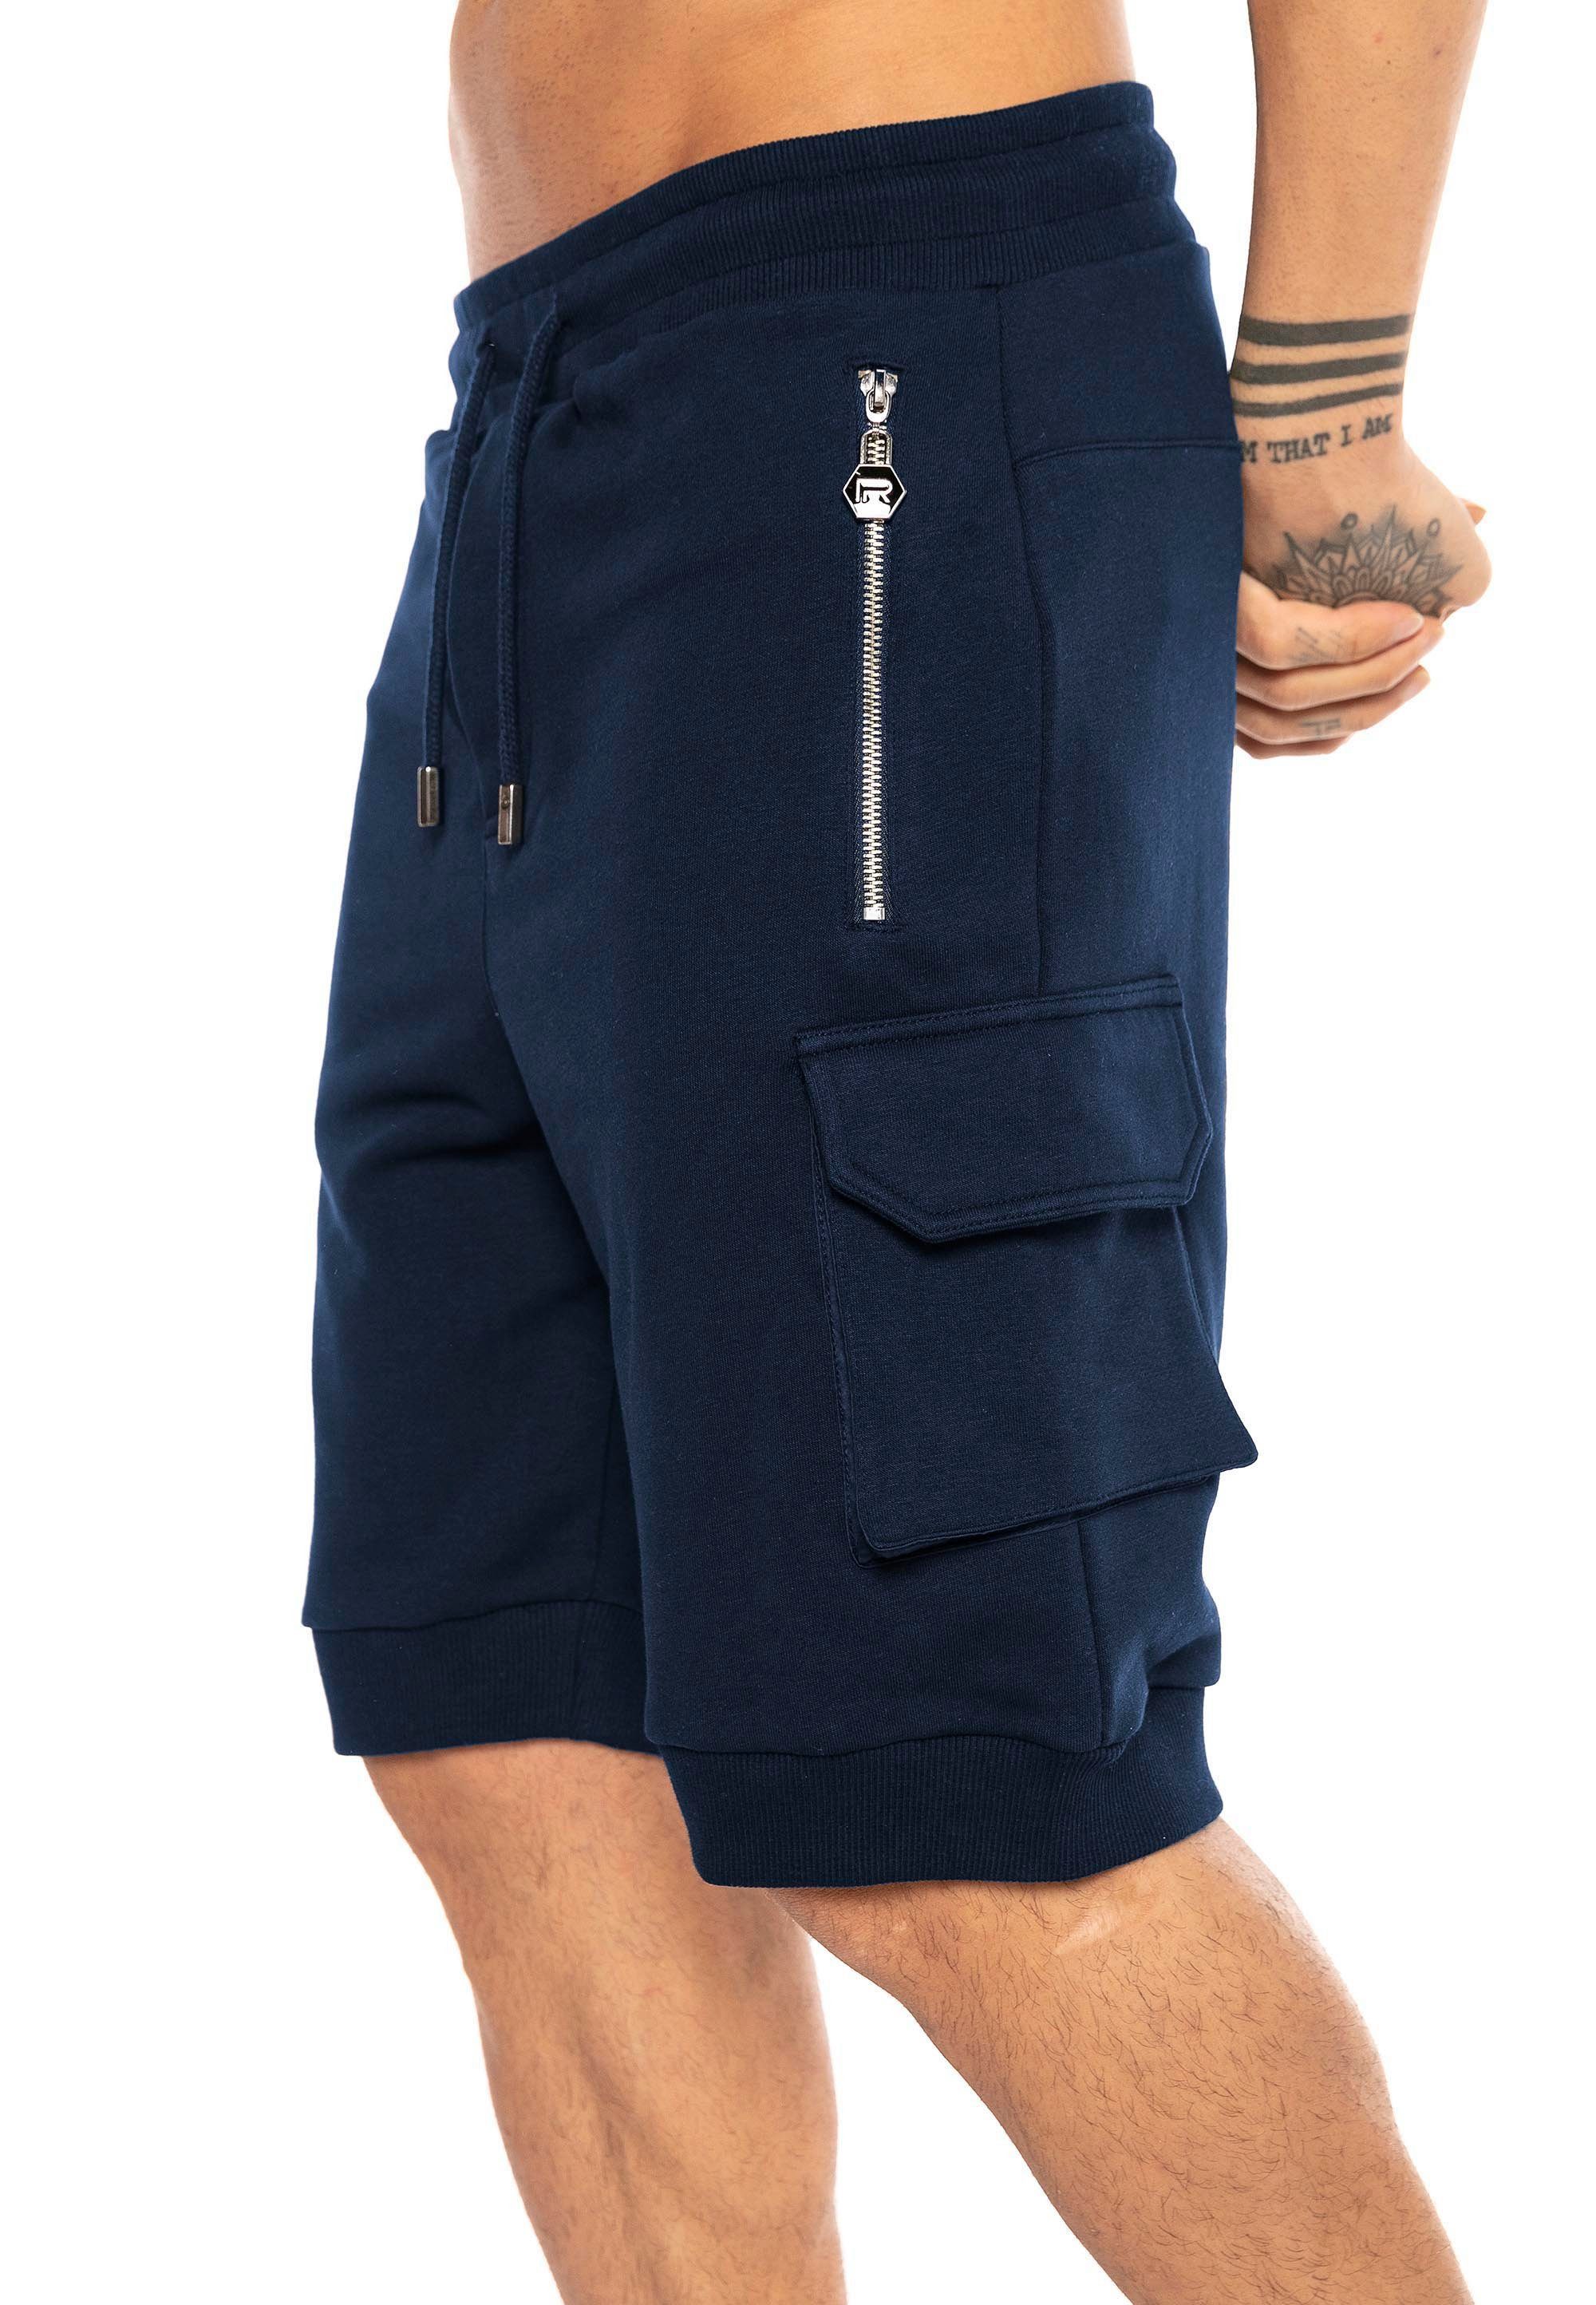 RedBridge Shorts mit Rippstrickbündchen am dunkelblau Beinabschluss